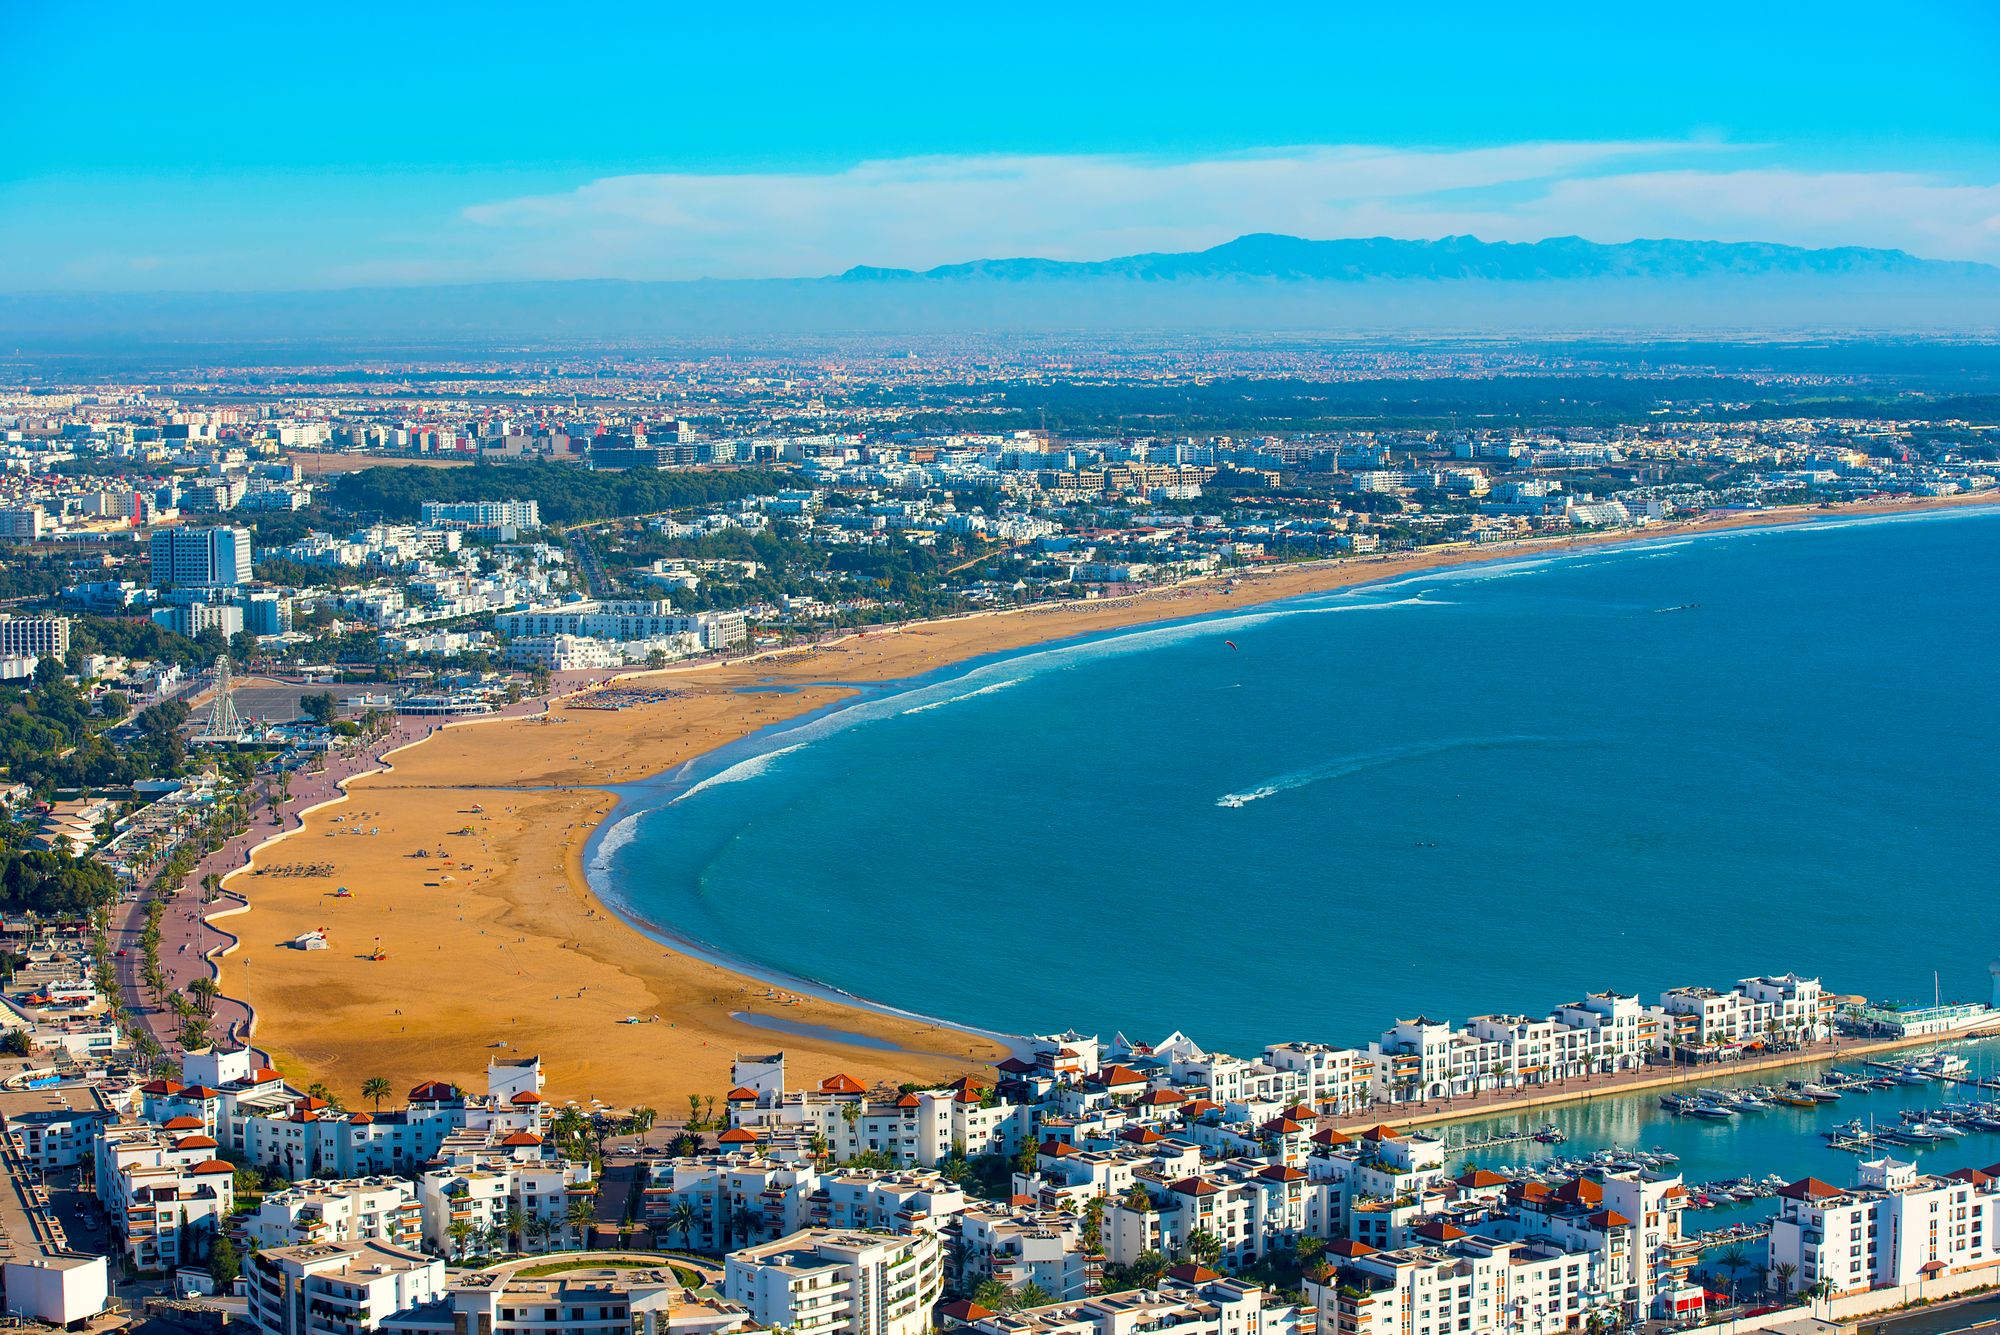 Explorez Agadir en Toute Liberté avec Notre Service de Location de Voiture